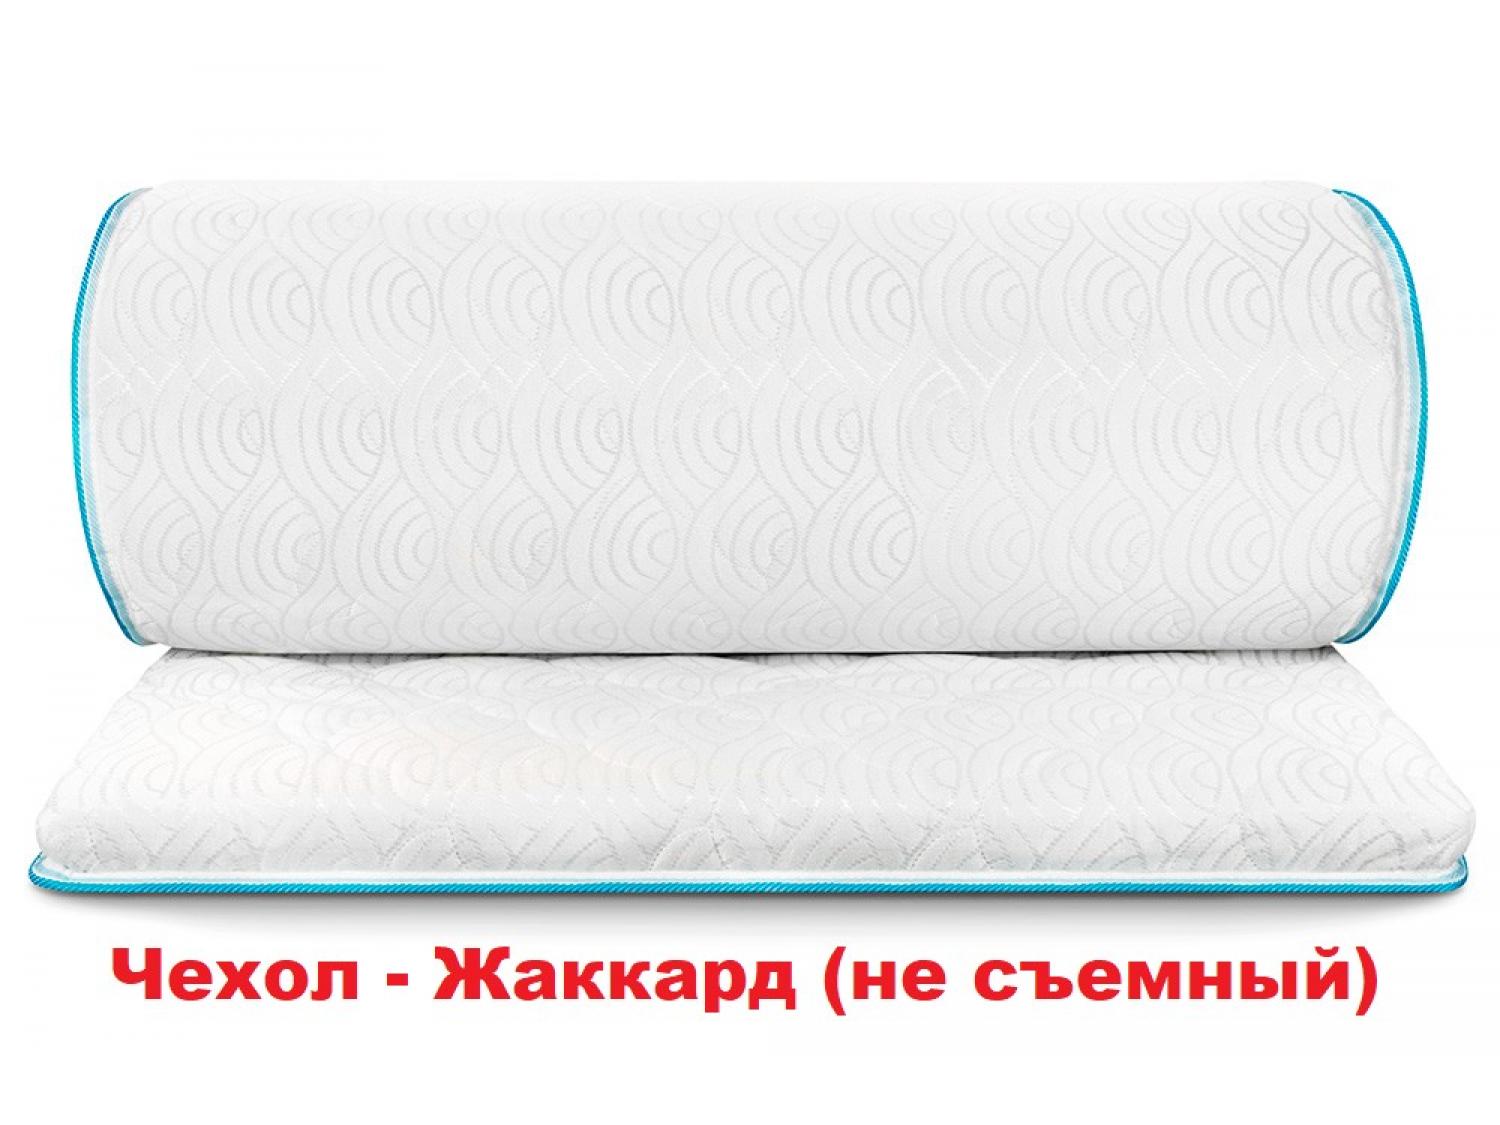 Мини-матрас Flex Kokos (жаккард)  (Акция-15%)